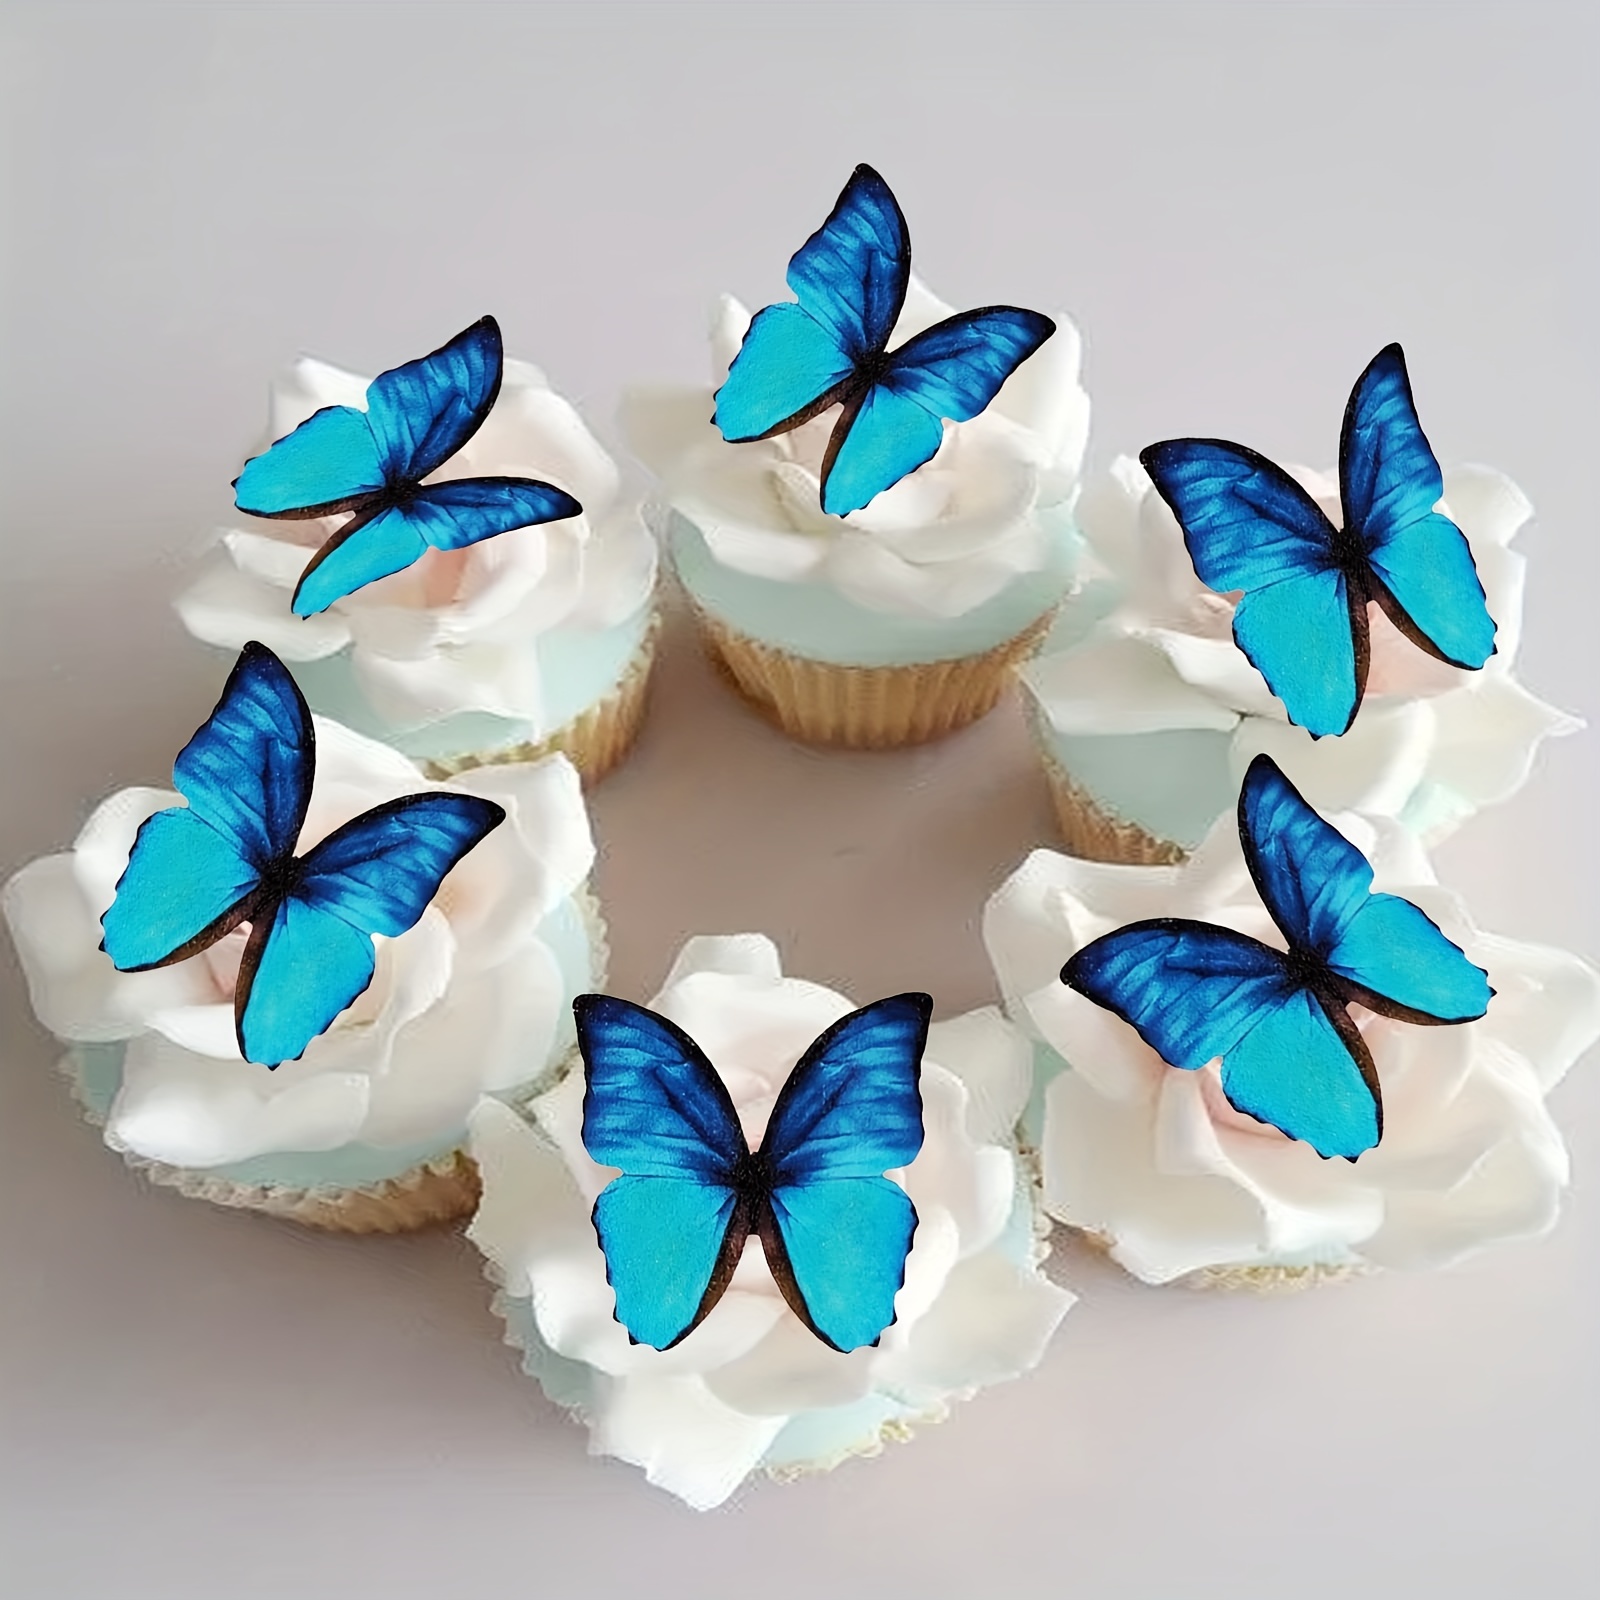 Mariposas comestibles para tartas y pasteles.